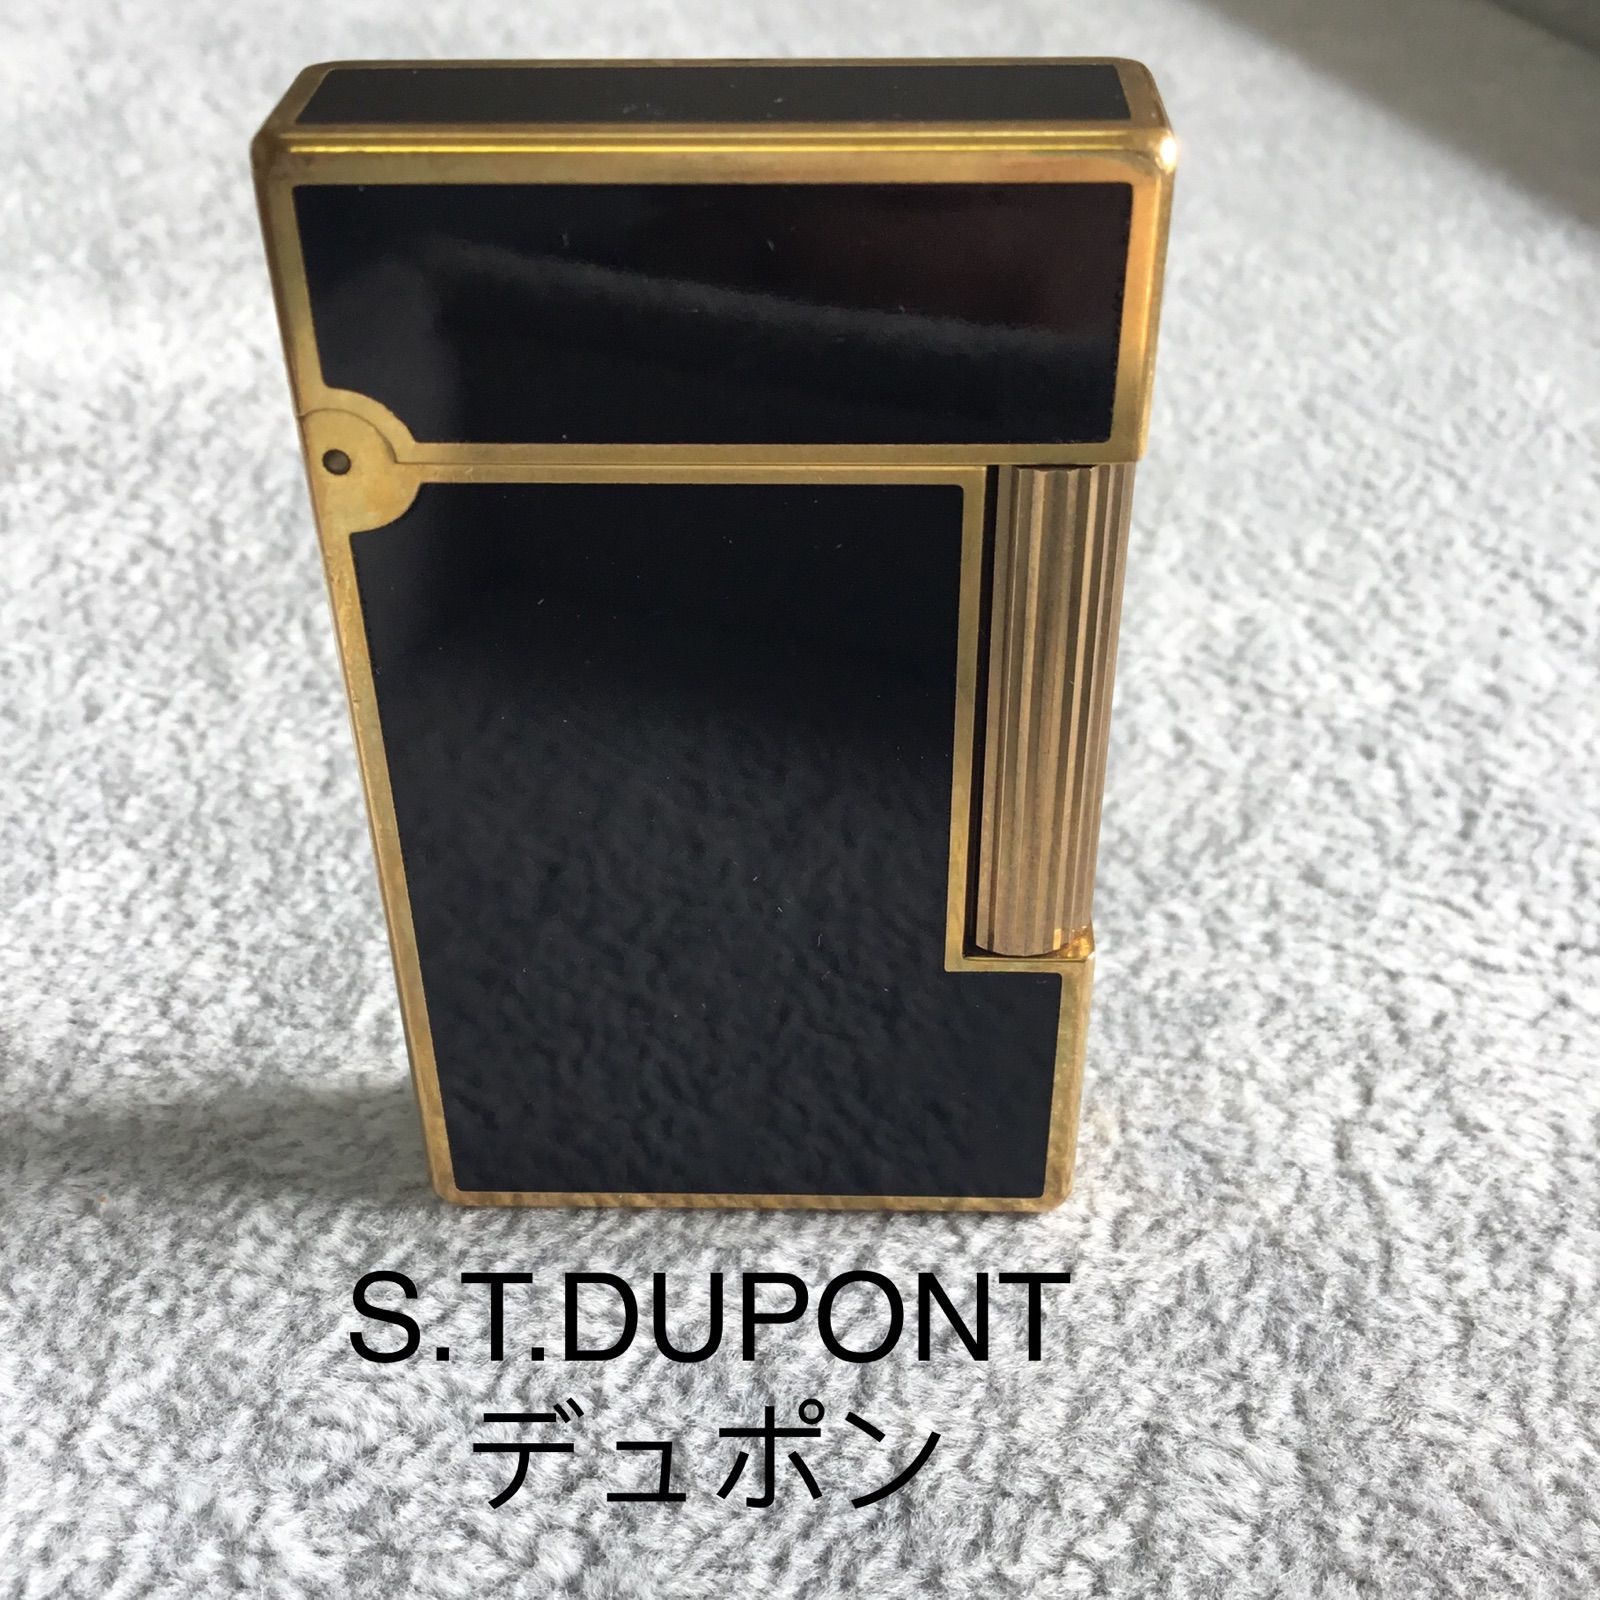 超美品 S.T.DUPONTデュポン ライター ブラック ゴールド - メルカリ